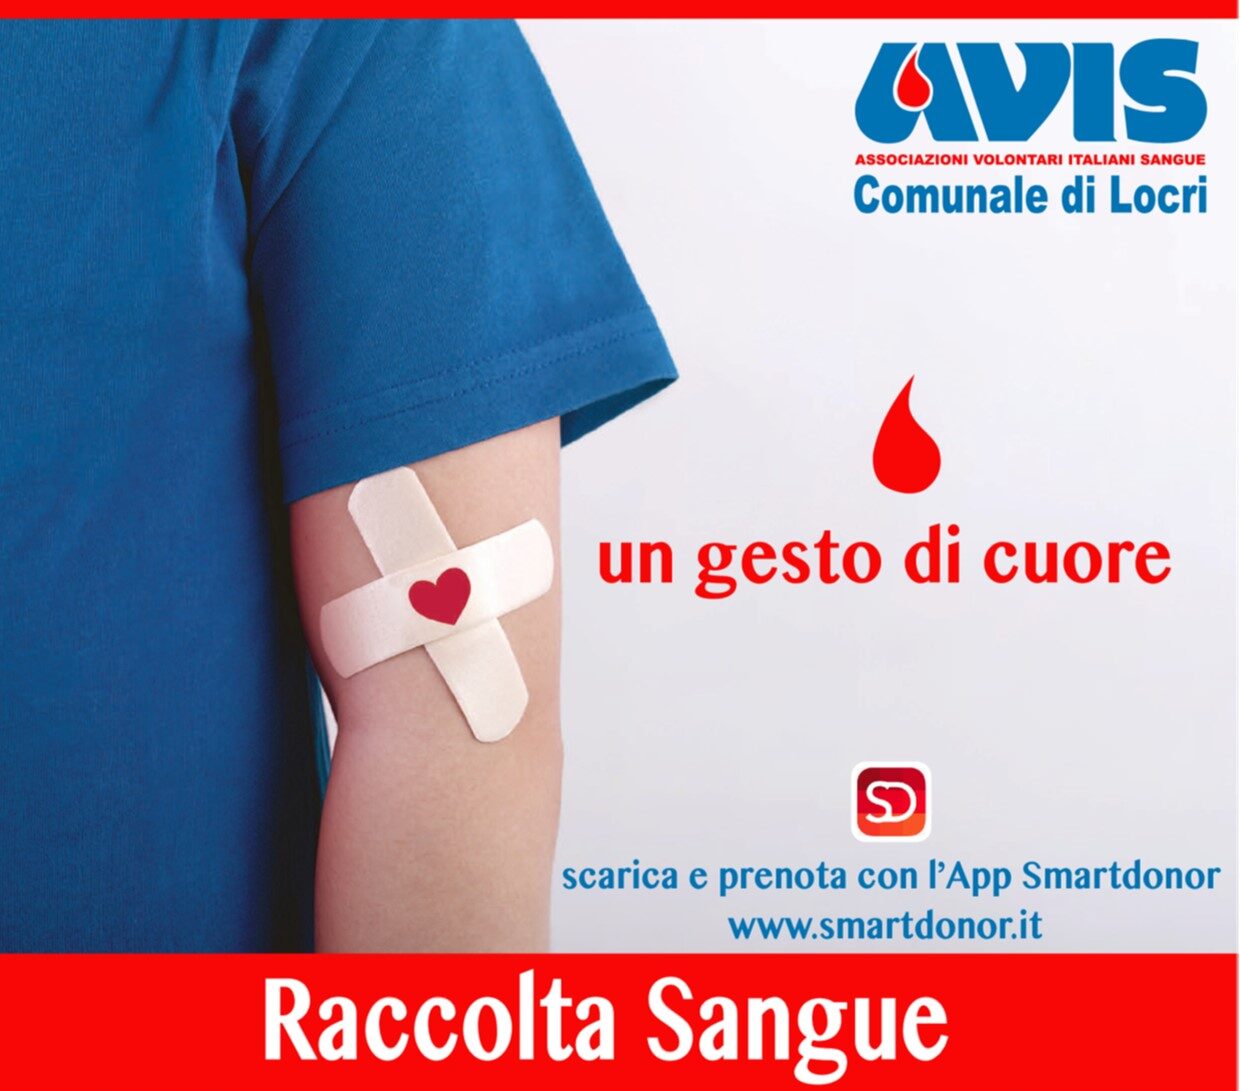 L’AVIS Comunale di Locri comunica le date delle raccolte di sangue per il mese di febbraio 2023